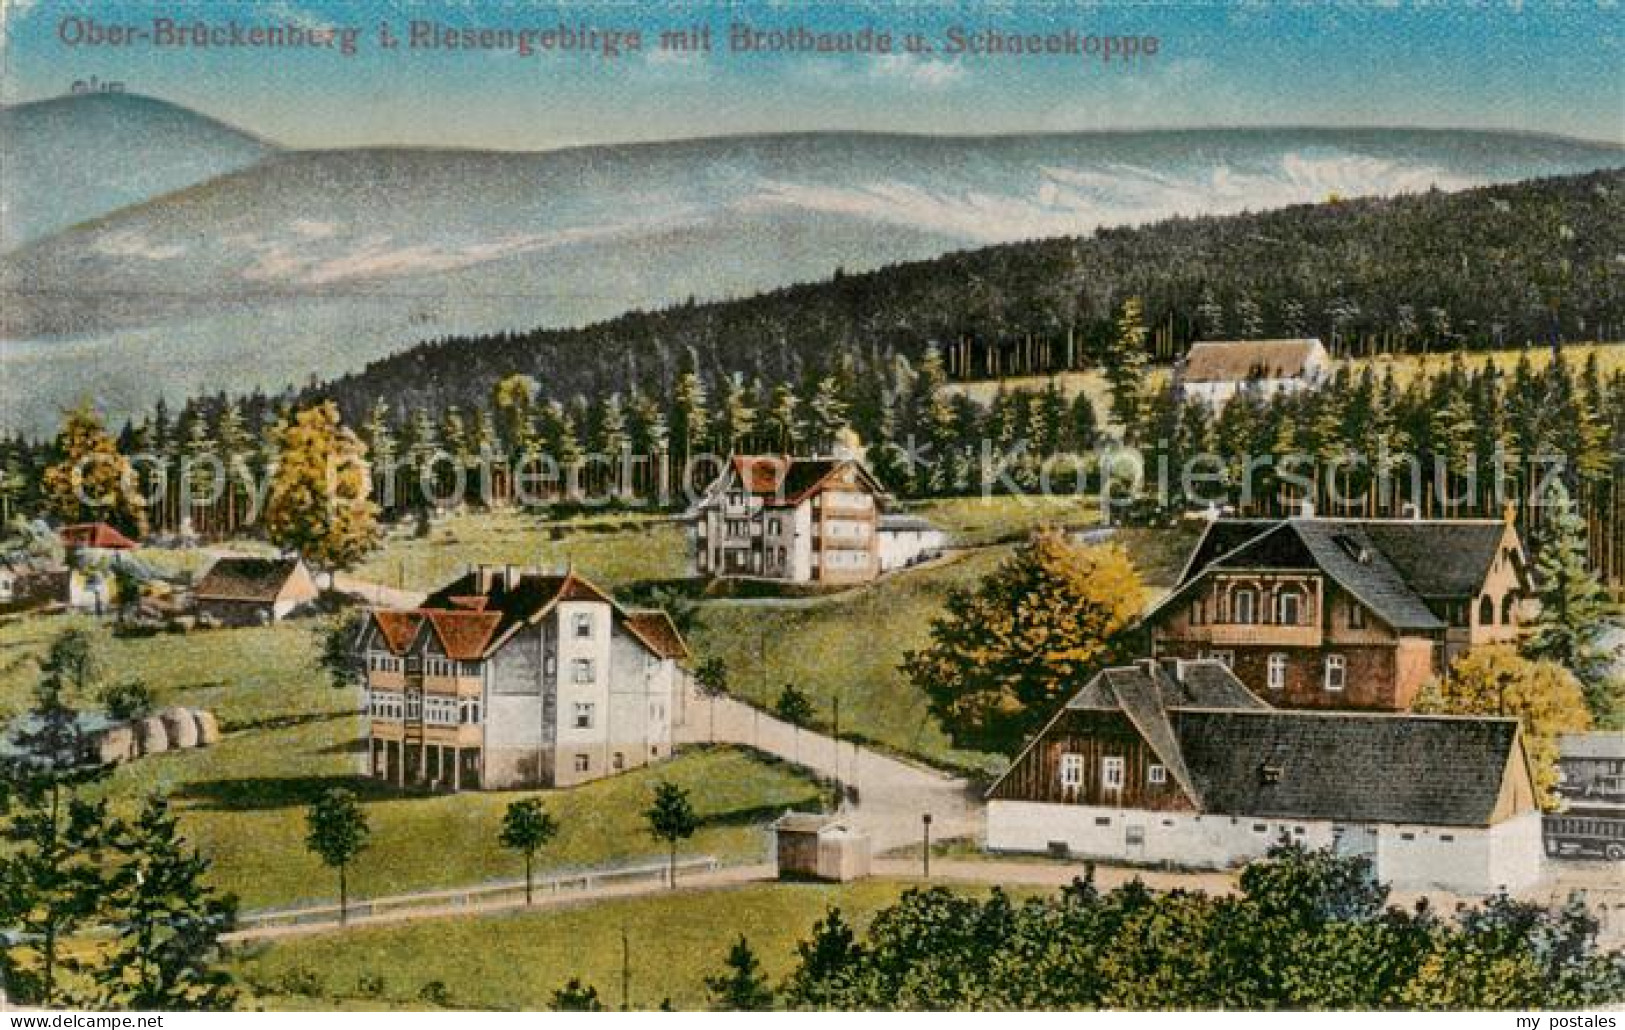 73819275 Ober-Brueckenberg Oberbrueckenberg PL Mit Brotbaude Und Schneekoppe  - Poland